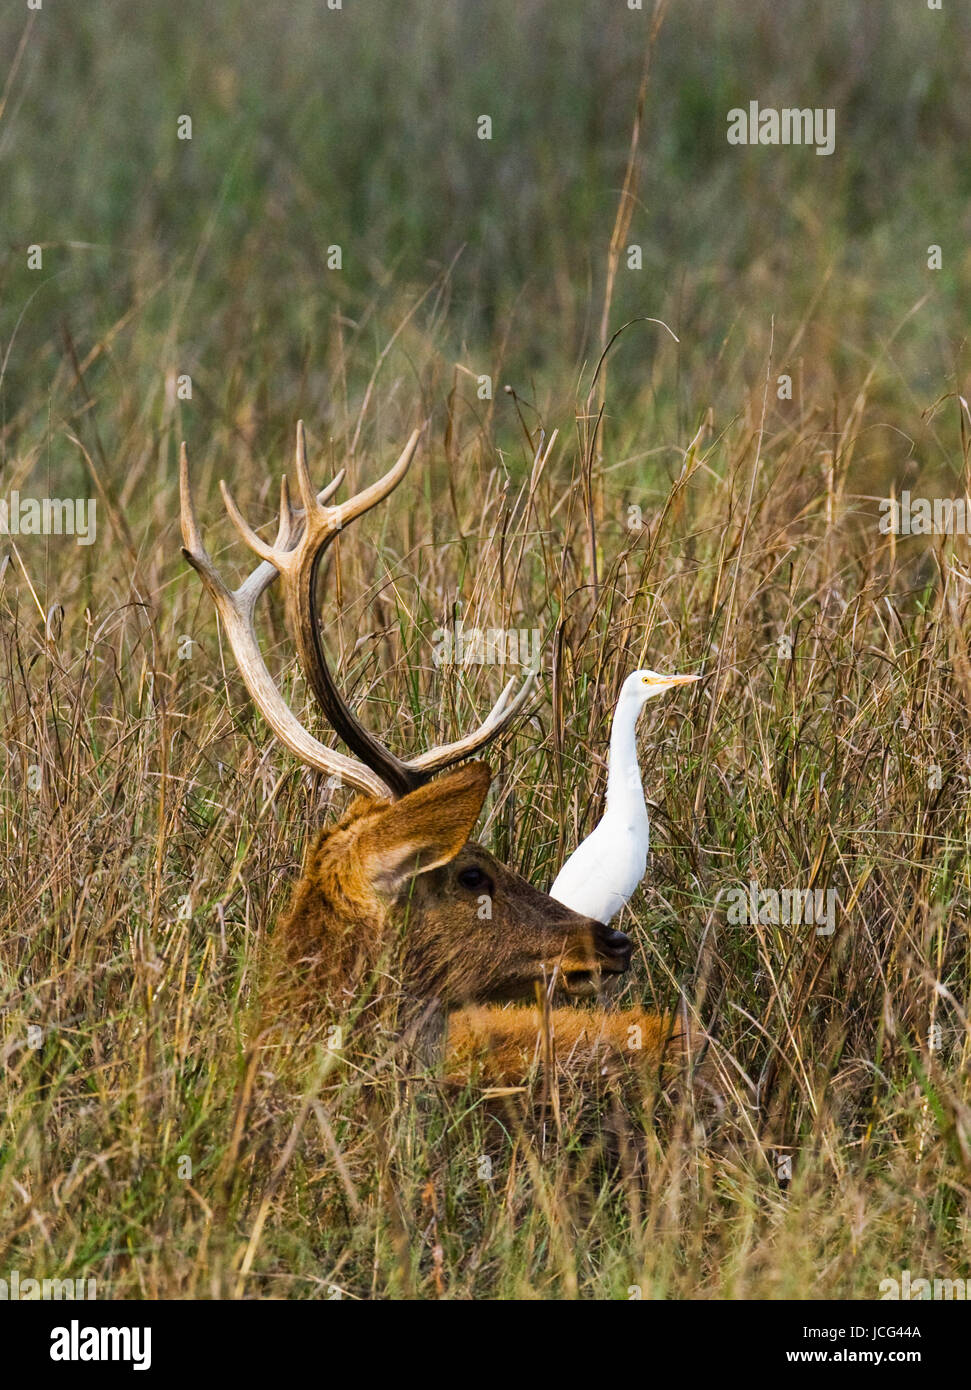 Hirsche mit schönen Hörnern, die in der Wildnis im Gras liegen. Indien. Nationalpark. Stockfoto